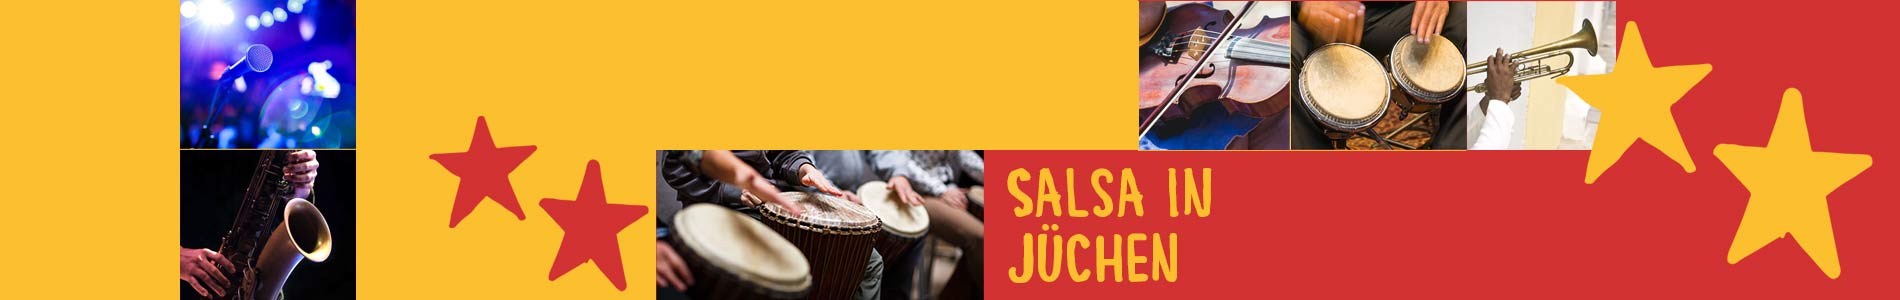 Salsa in Jüchen – Salsa lernen und tanzen, Tanzkurse, Partys, Veranstaltungen